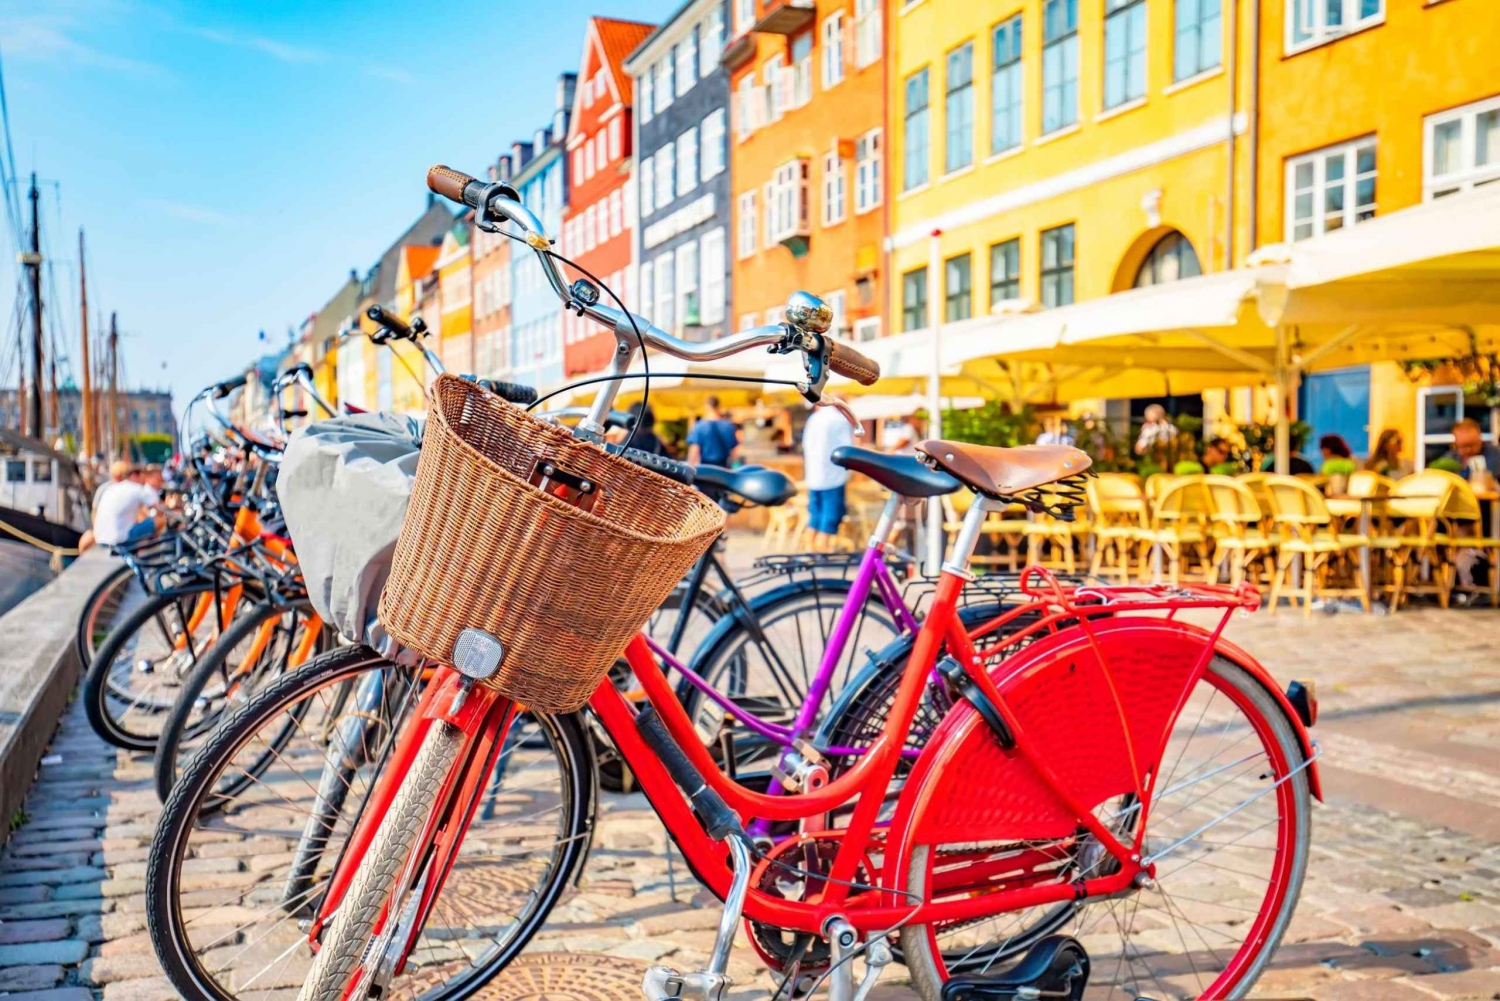 Grand Bike Tour i Københavns gamle bydel, seværdigheder, natur